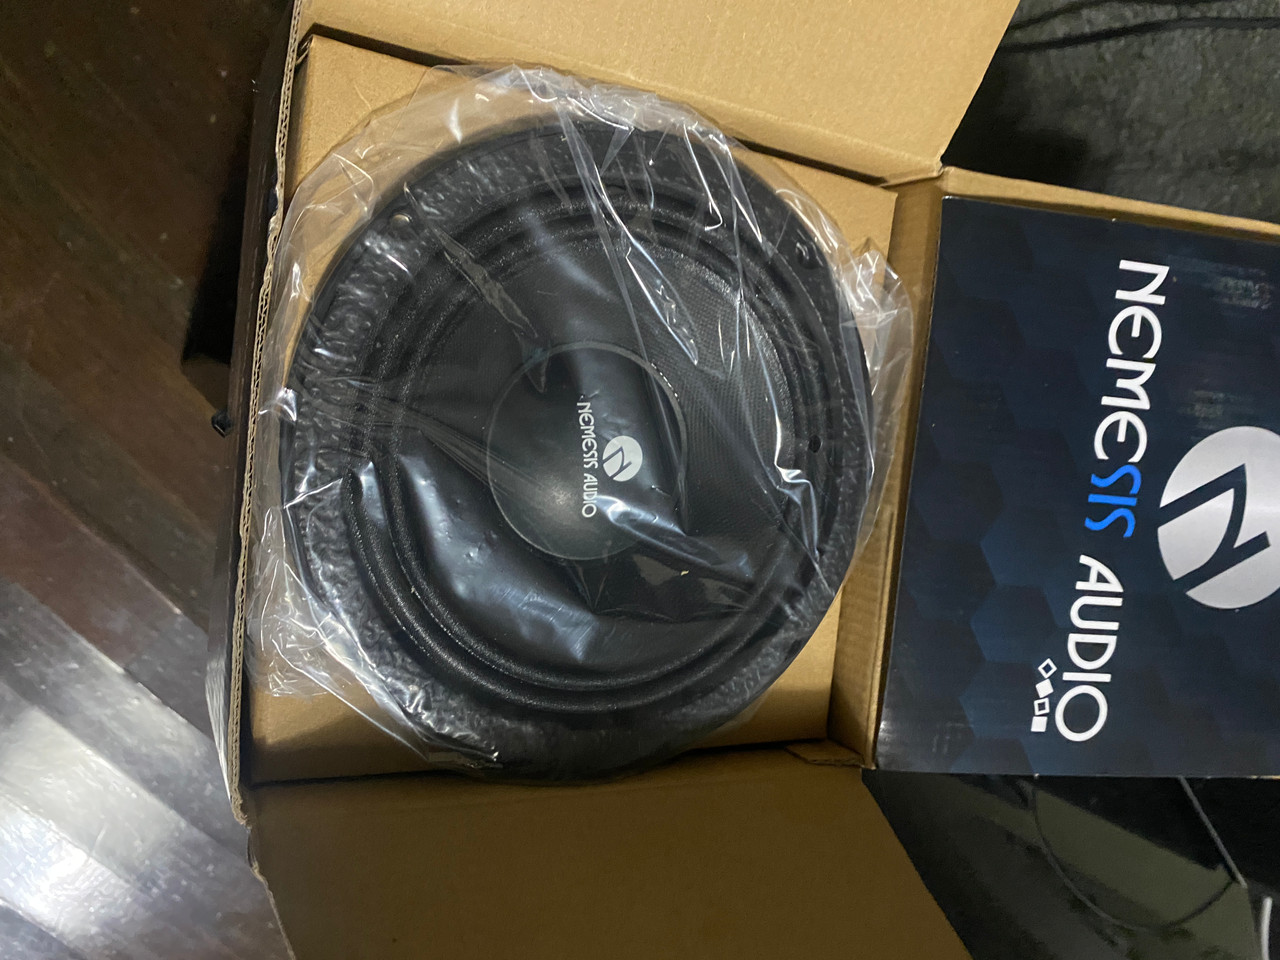 Nemesis Audio NEO-6.5COL 6.5 Neodymium Midrange Loudspeaker 300 Watts